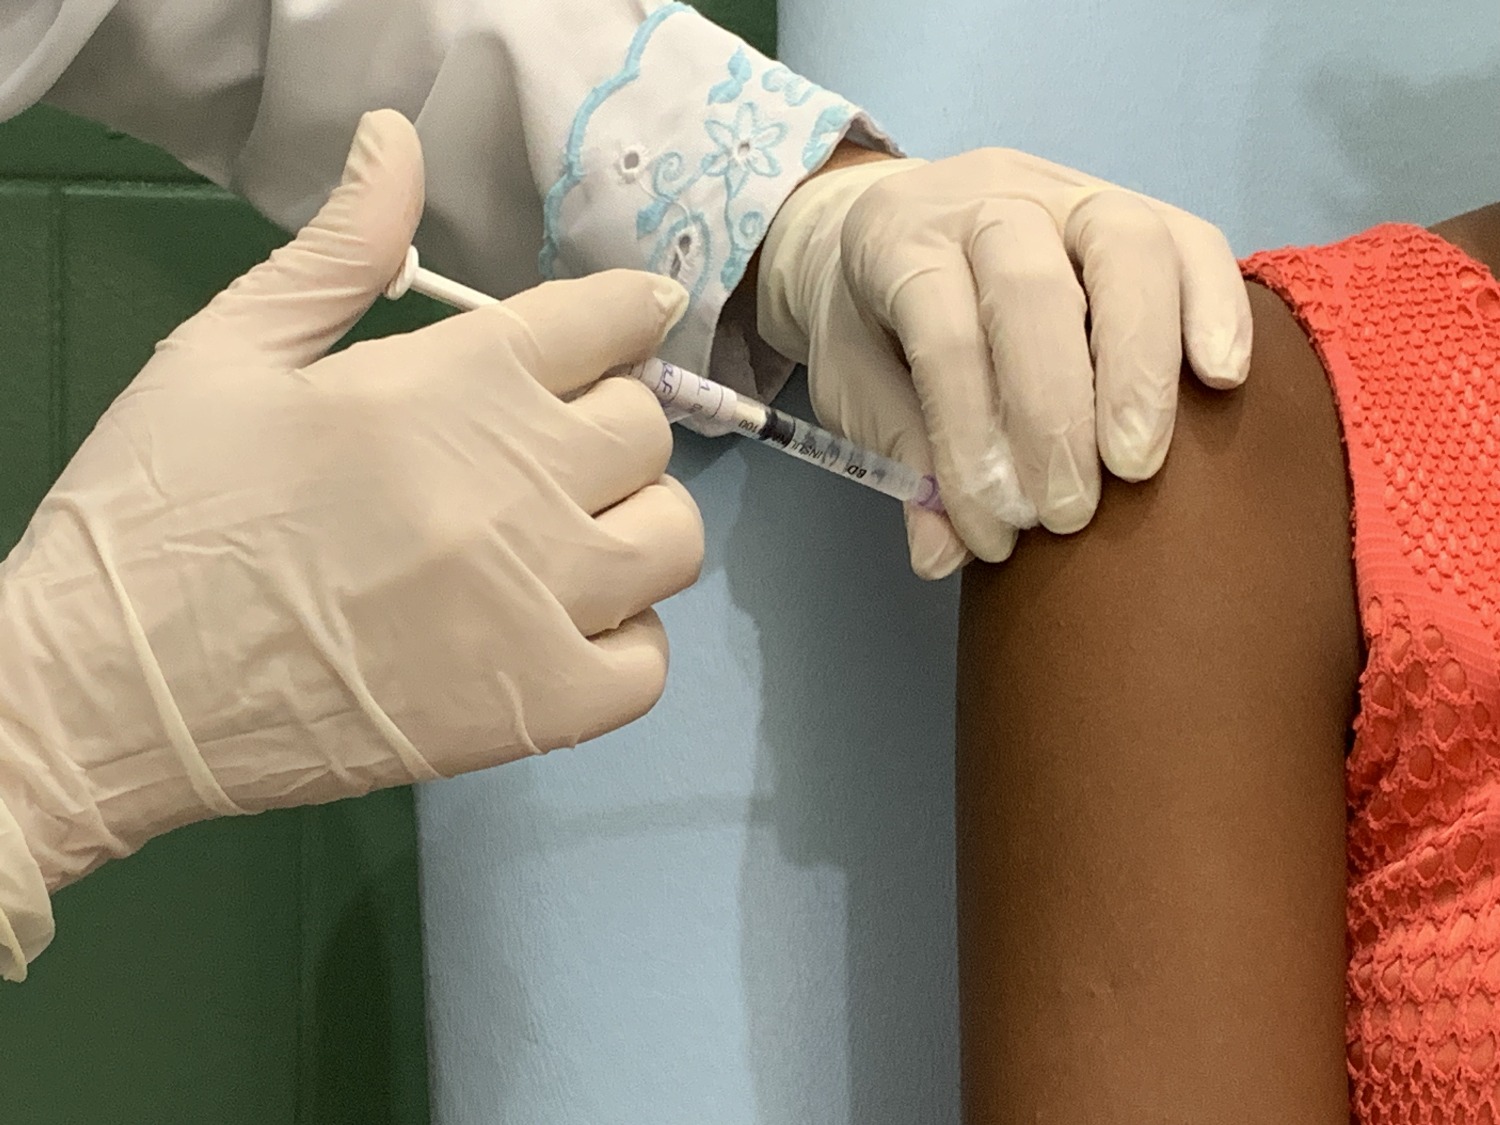 Vacina tetravalente contra gripe é testada em todo país. Fotos: Josafá Neto/Rádio UFS